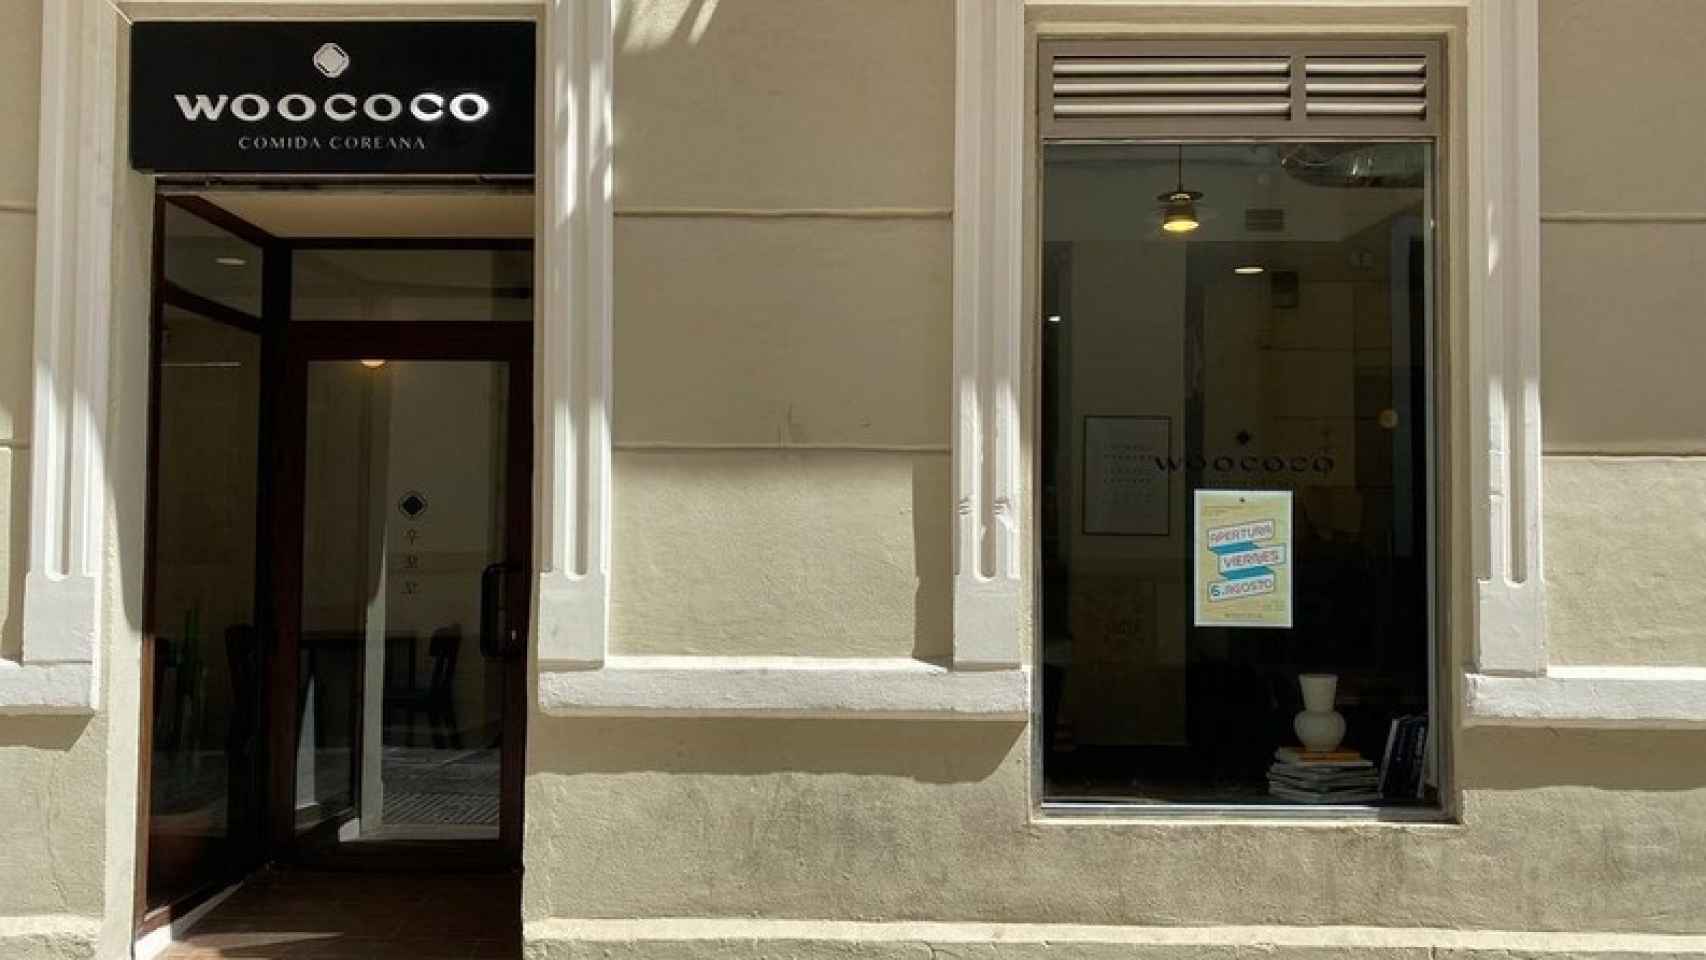 Woococo hace poco que ha abierto sus puertas en Málaga.